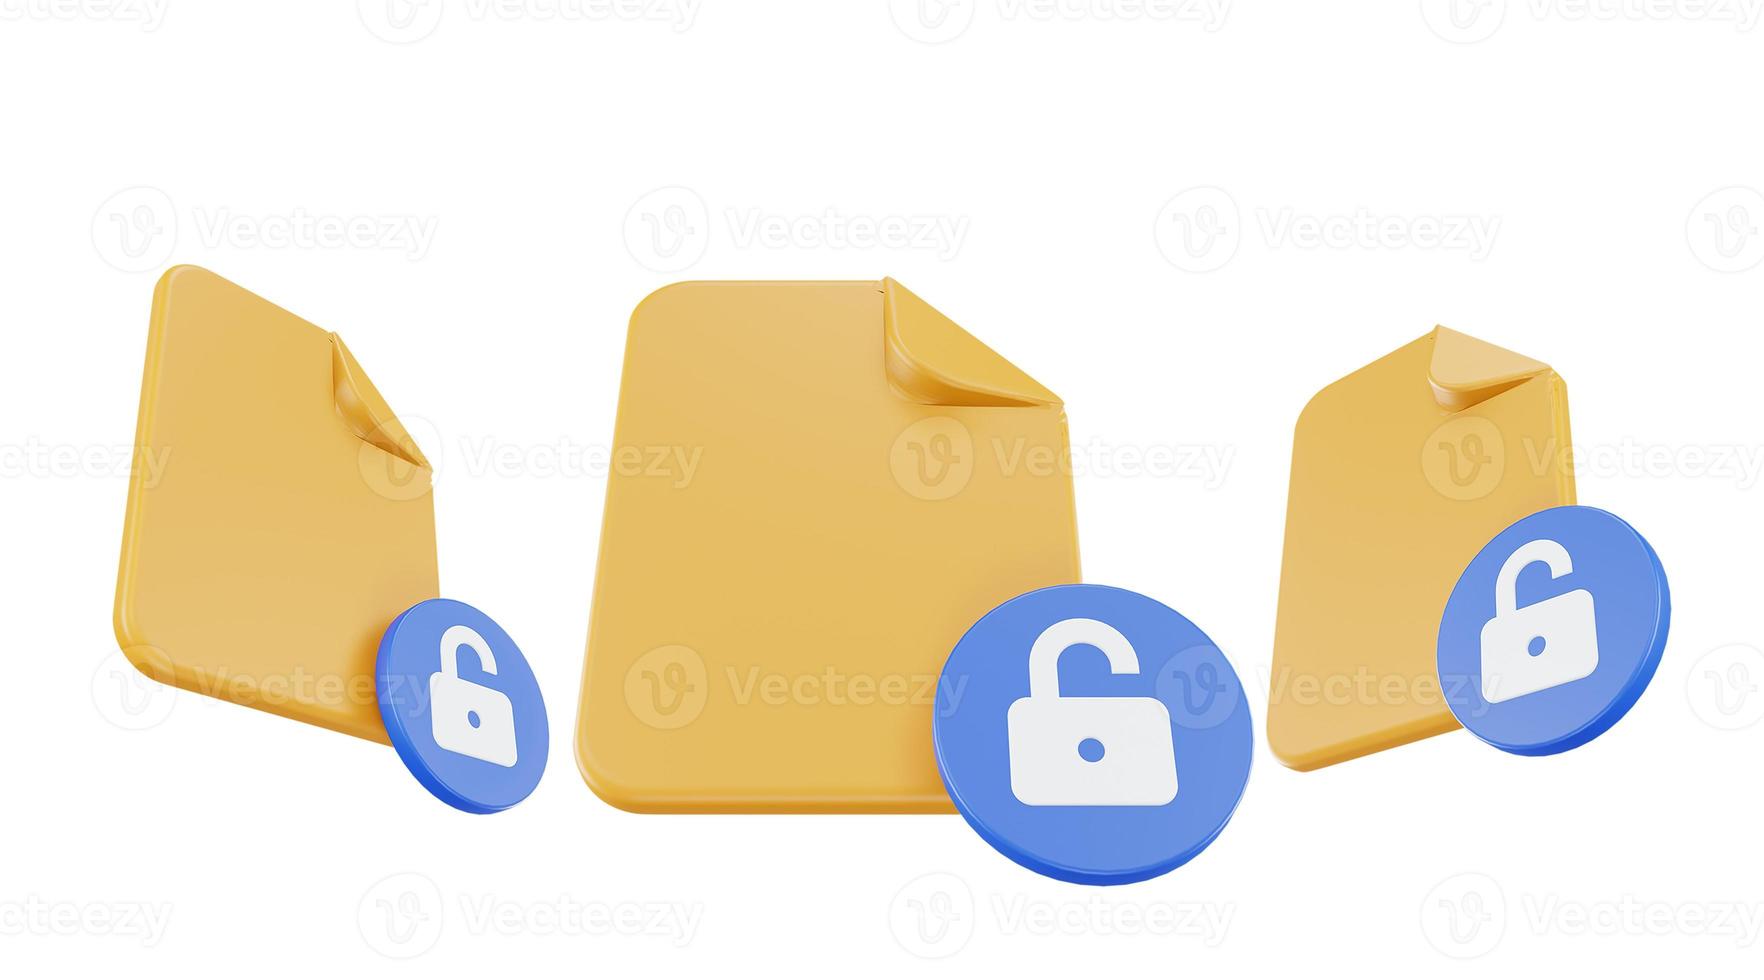 3d render archivo icono desbloqueado con papel de archivo naranja y azul desbloqueado foto